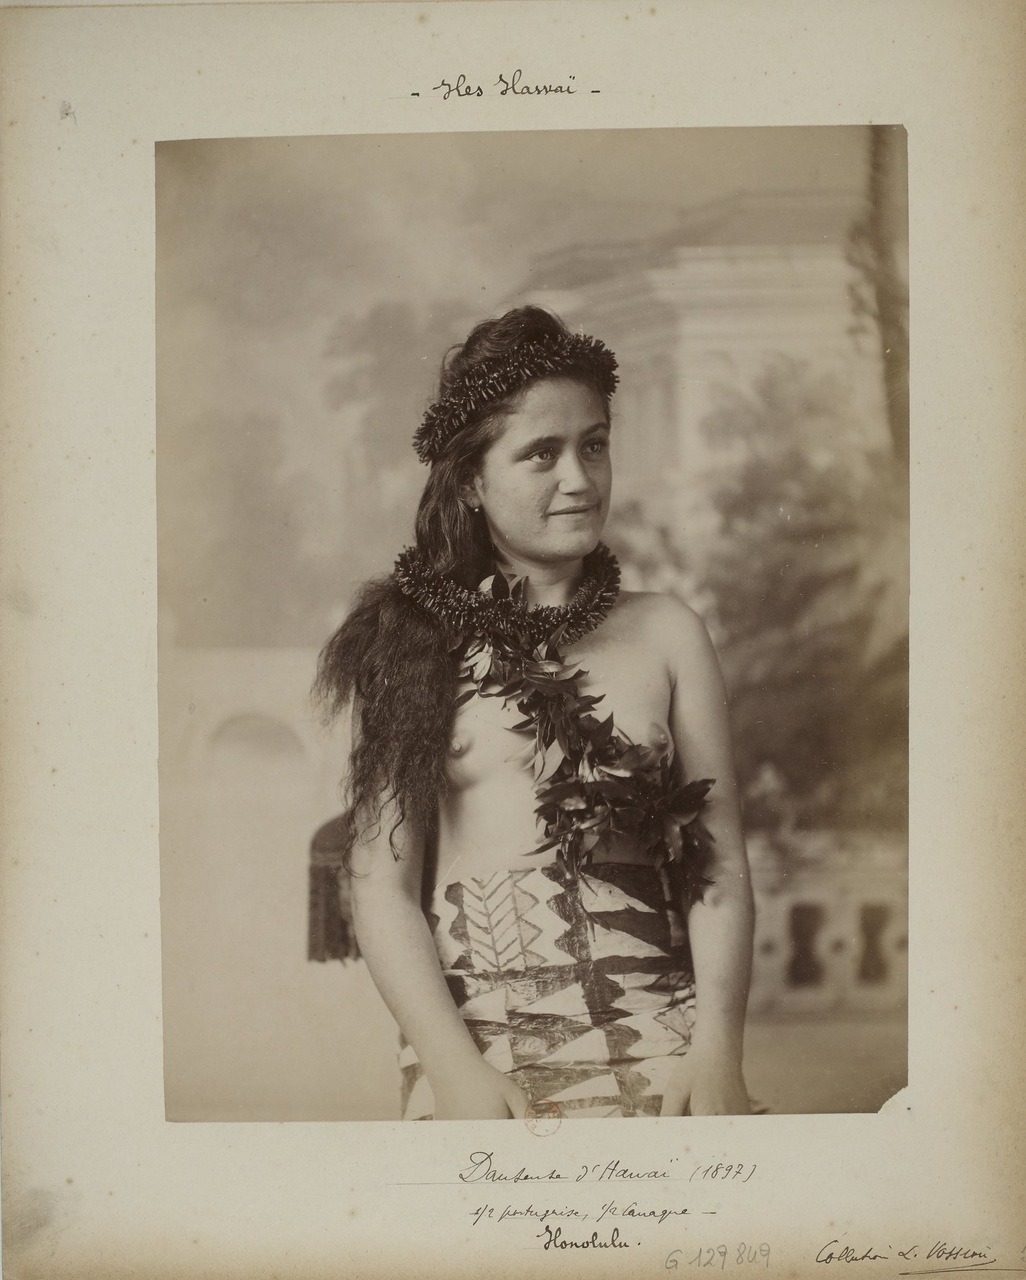 Hawaiian woman, via goodoldtime